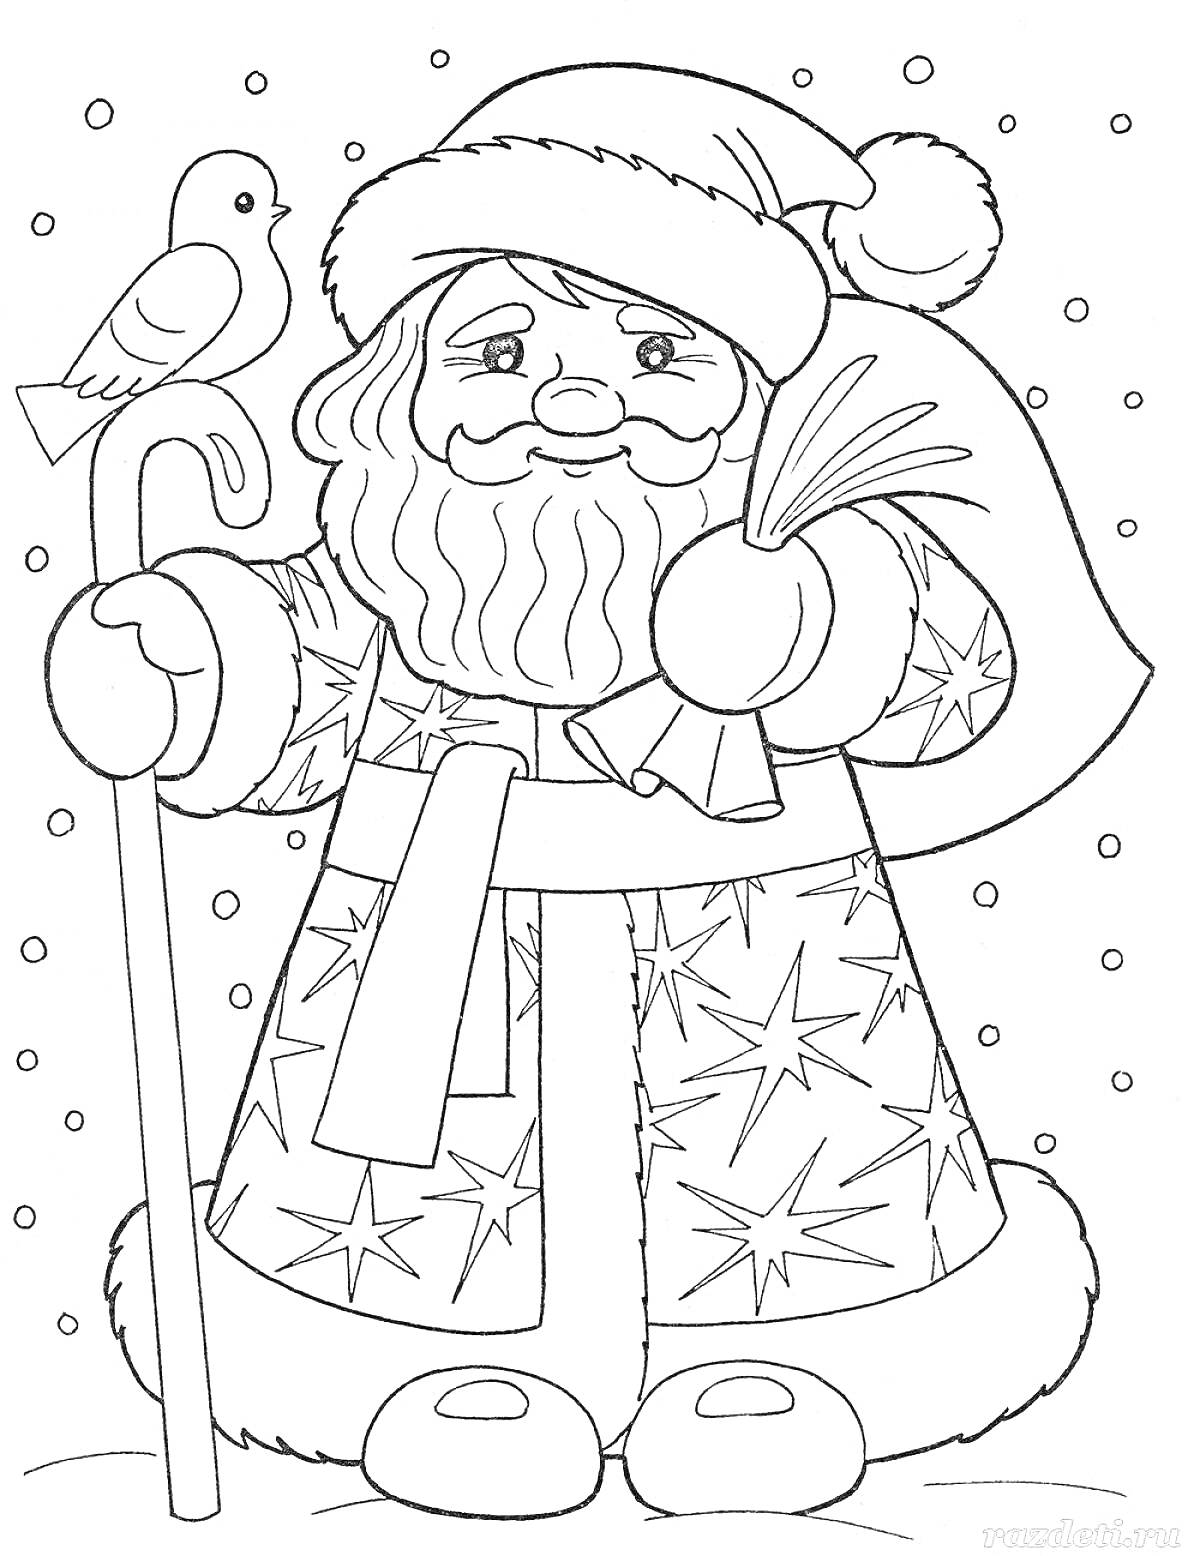 Дед Мороз с посохом, мешком подарков и птичкой на руке, снег